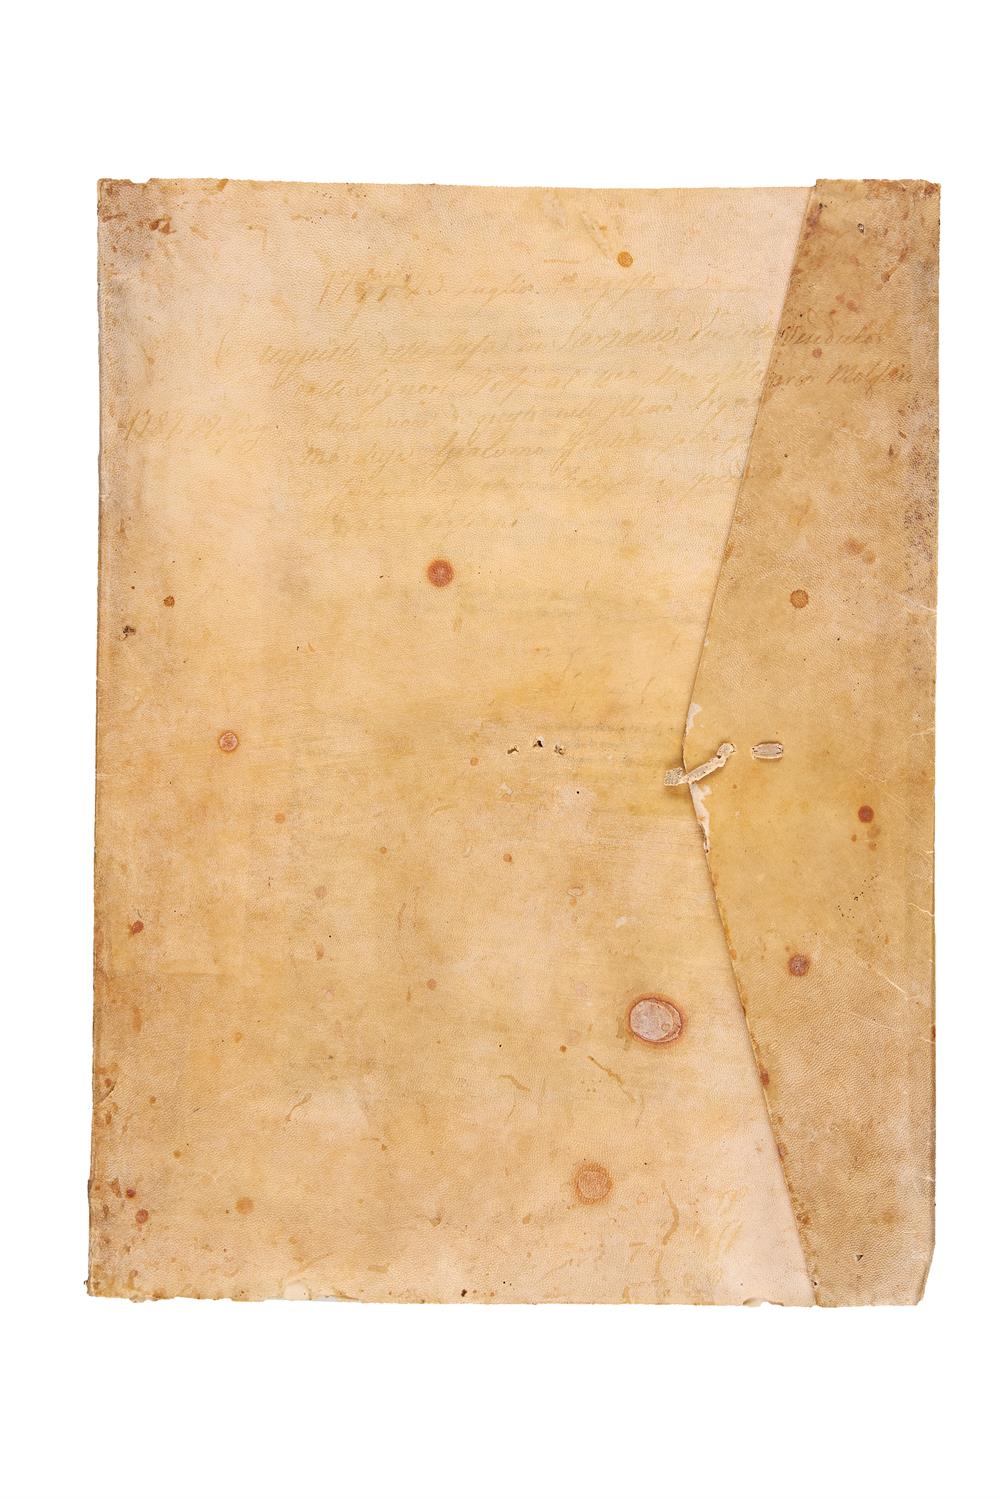 Ɵ Giovanni da Capestrano, Legal opinions, in Latin, manuscript on paper [Italy, 15th century] - Image 2 of 4